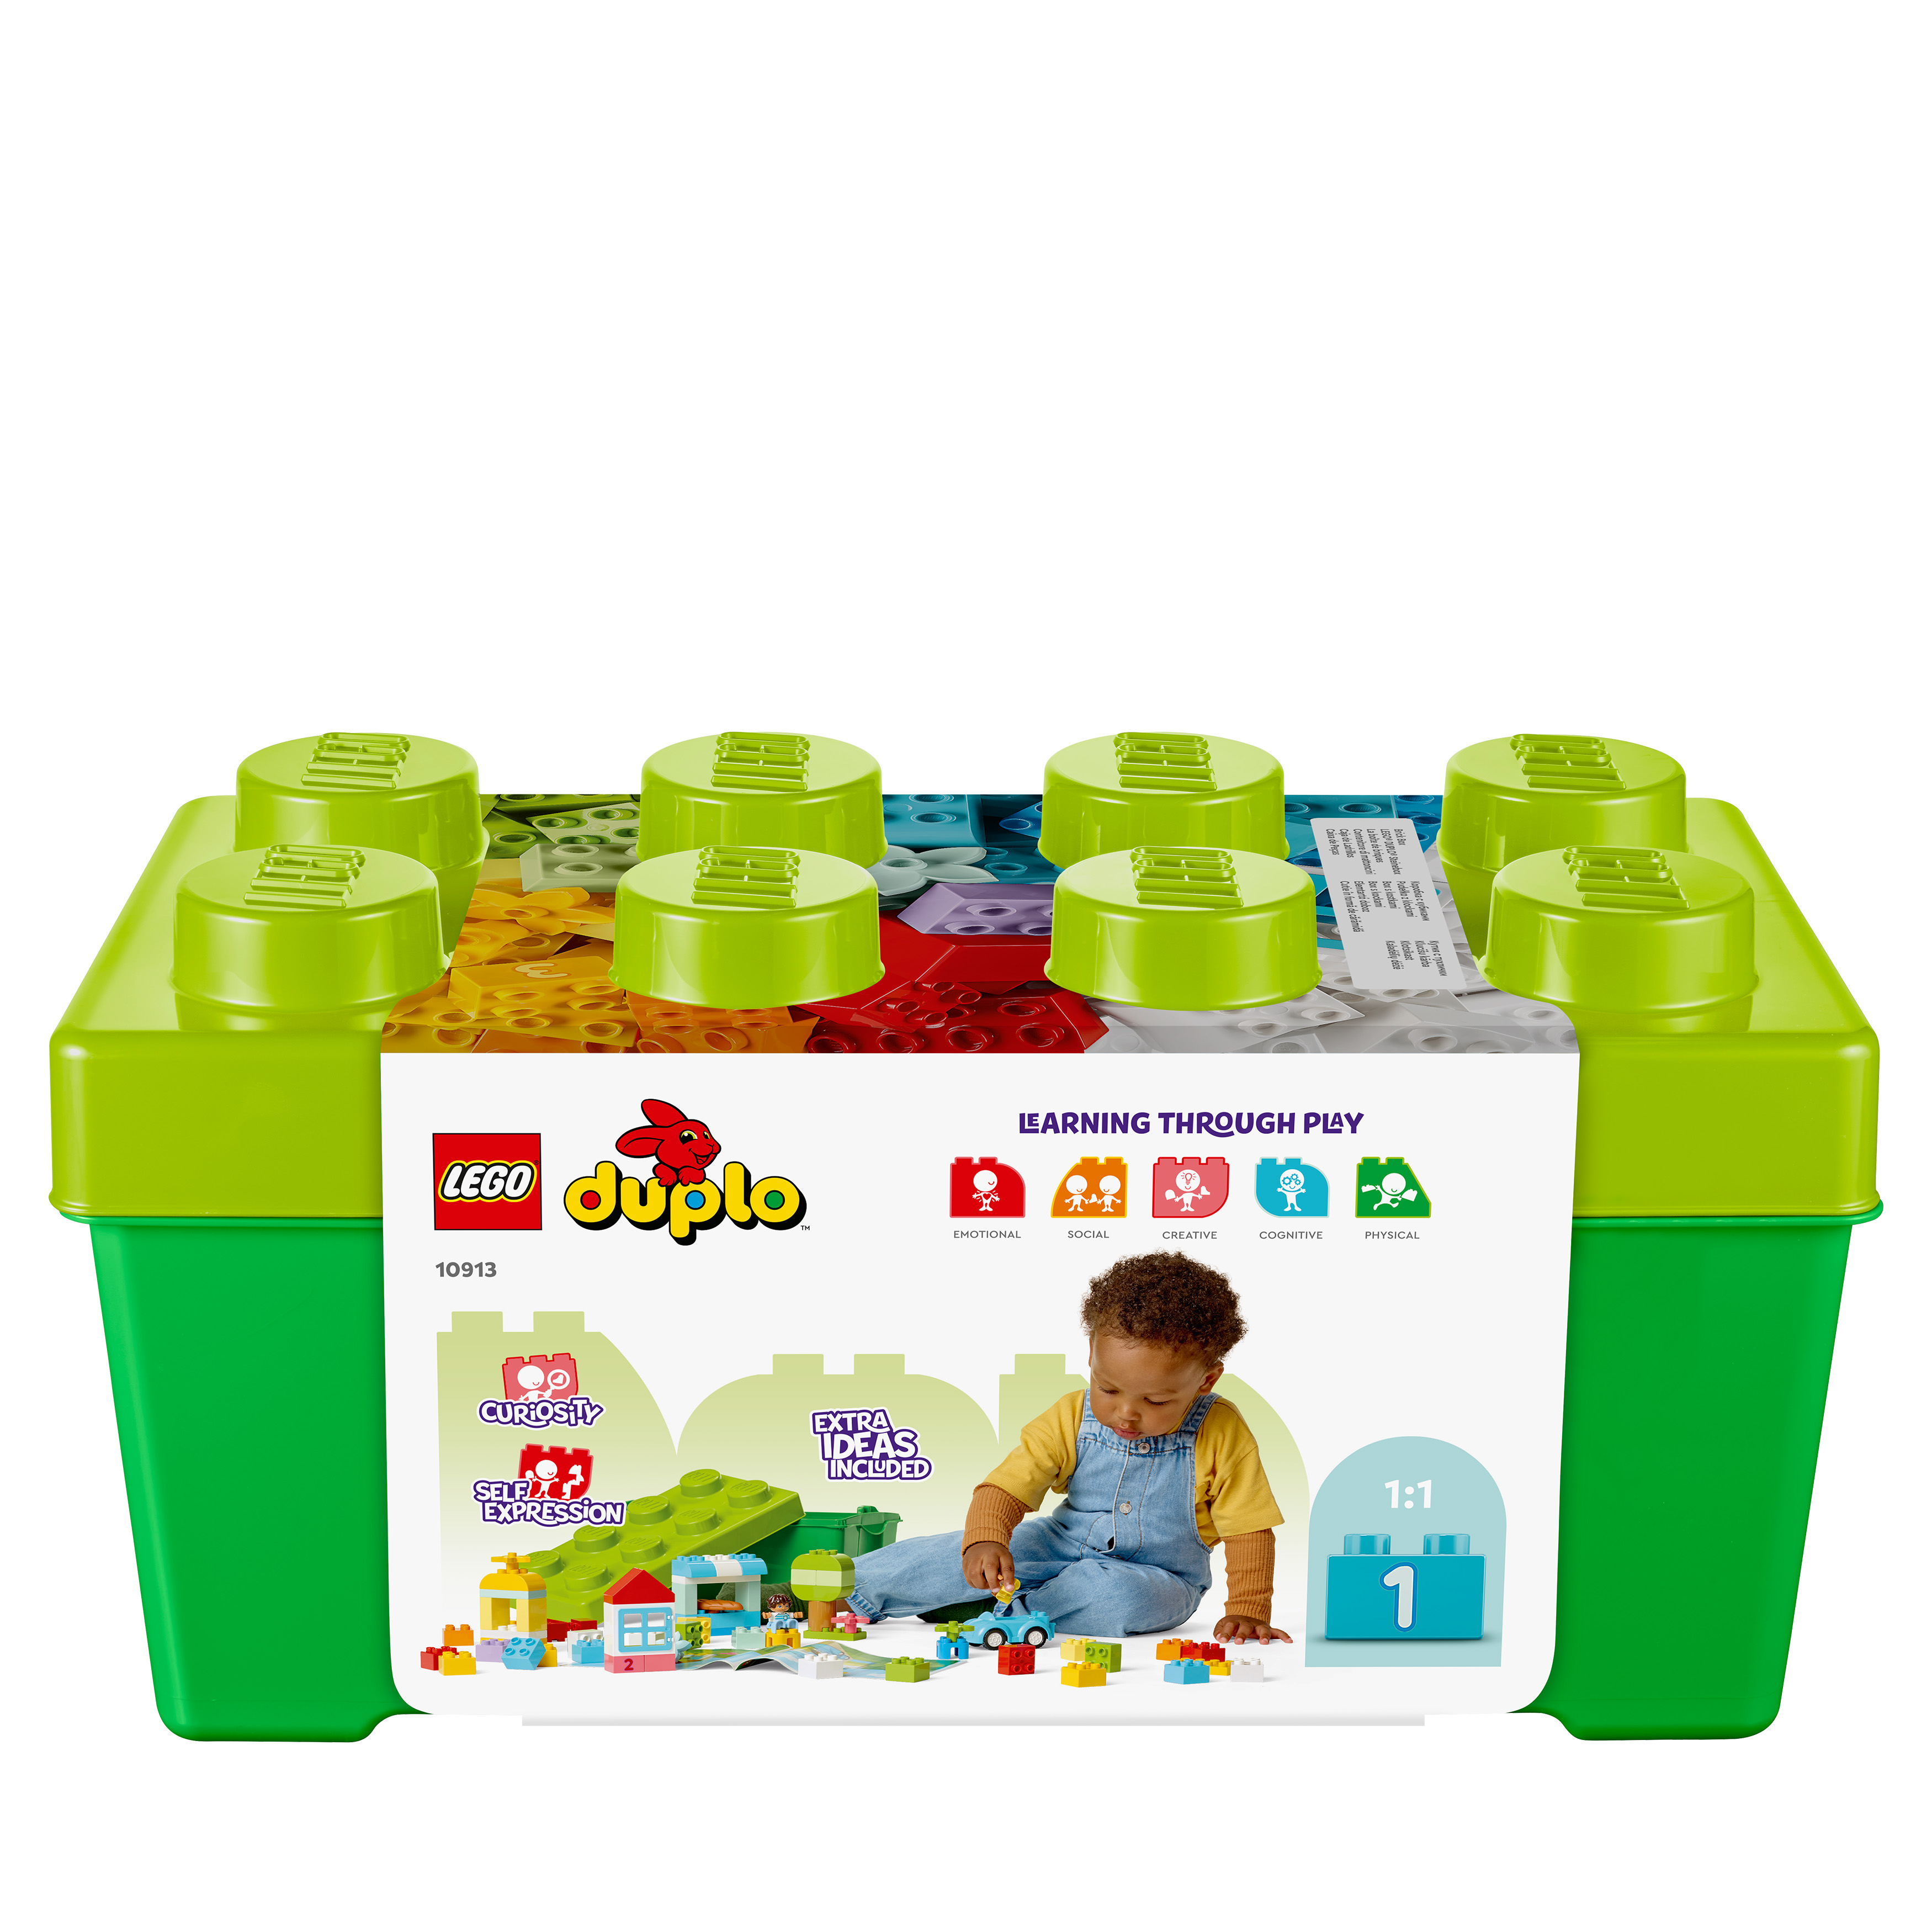 10913 DUPLO® LEGO Steinebox Mehrfarbig Bausatz,